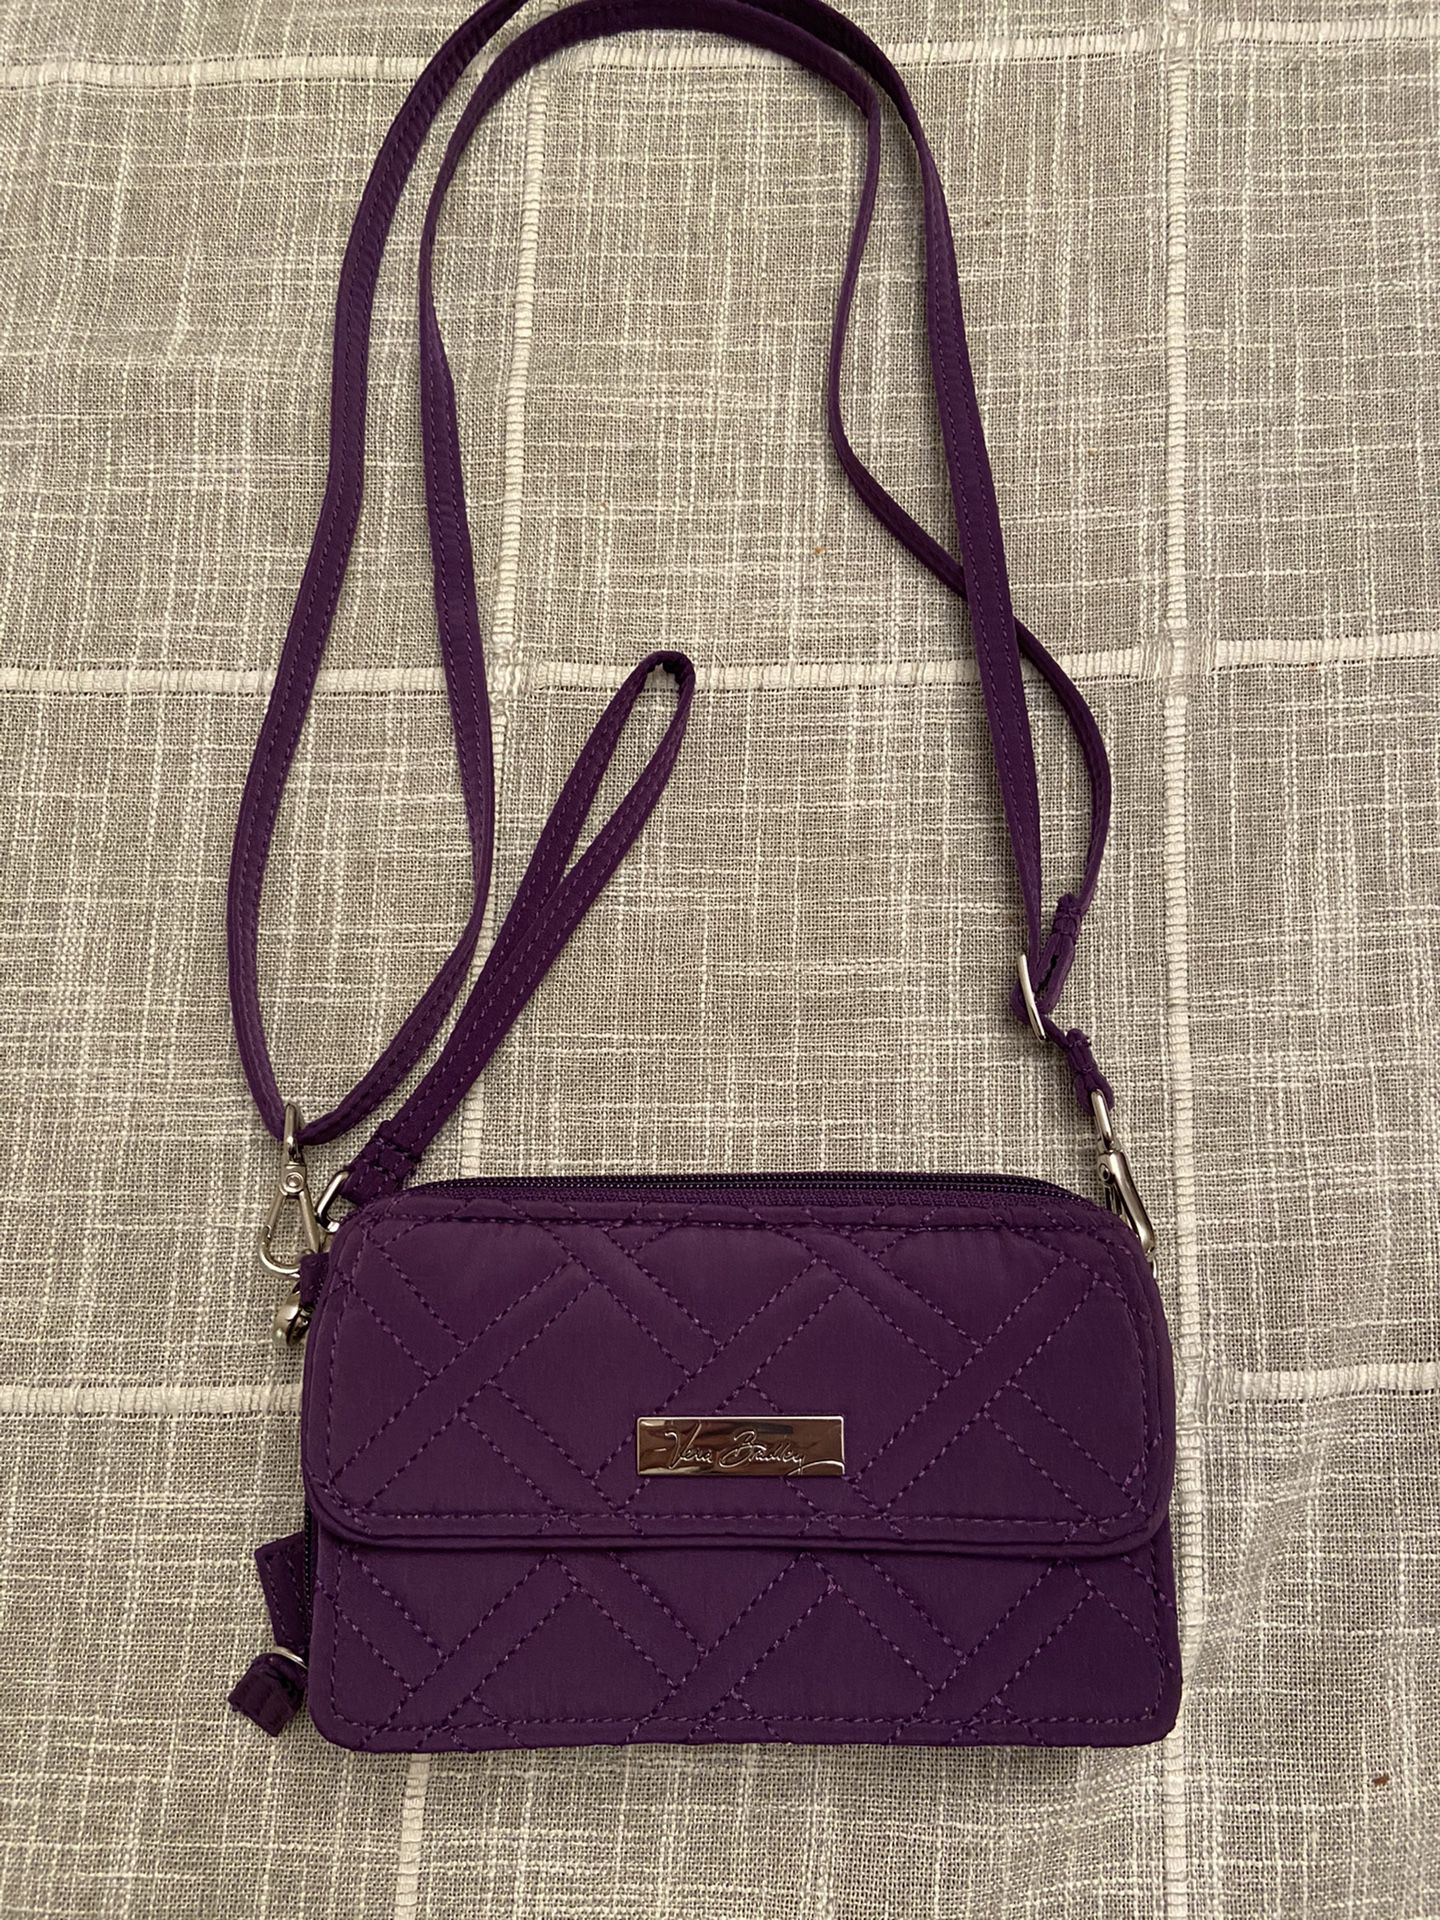 Vera Bradley Small Wallet/handbag 